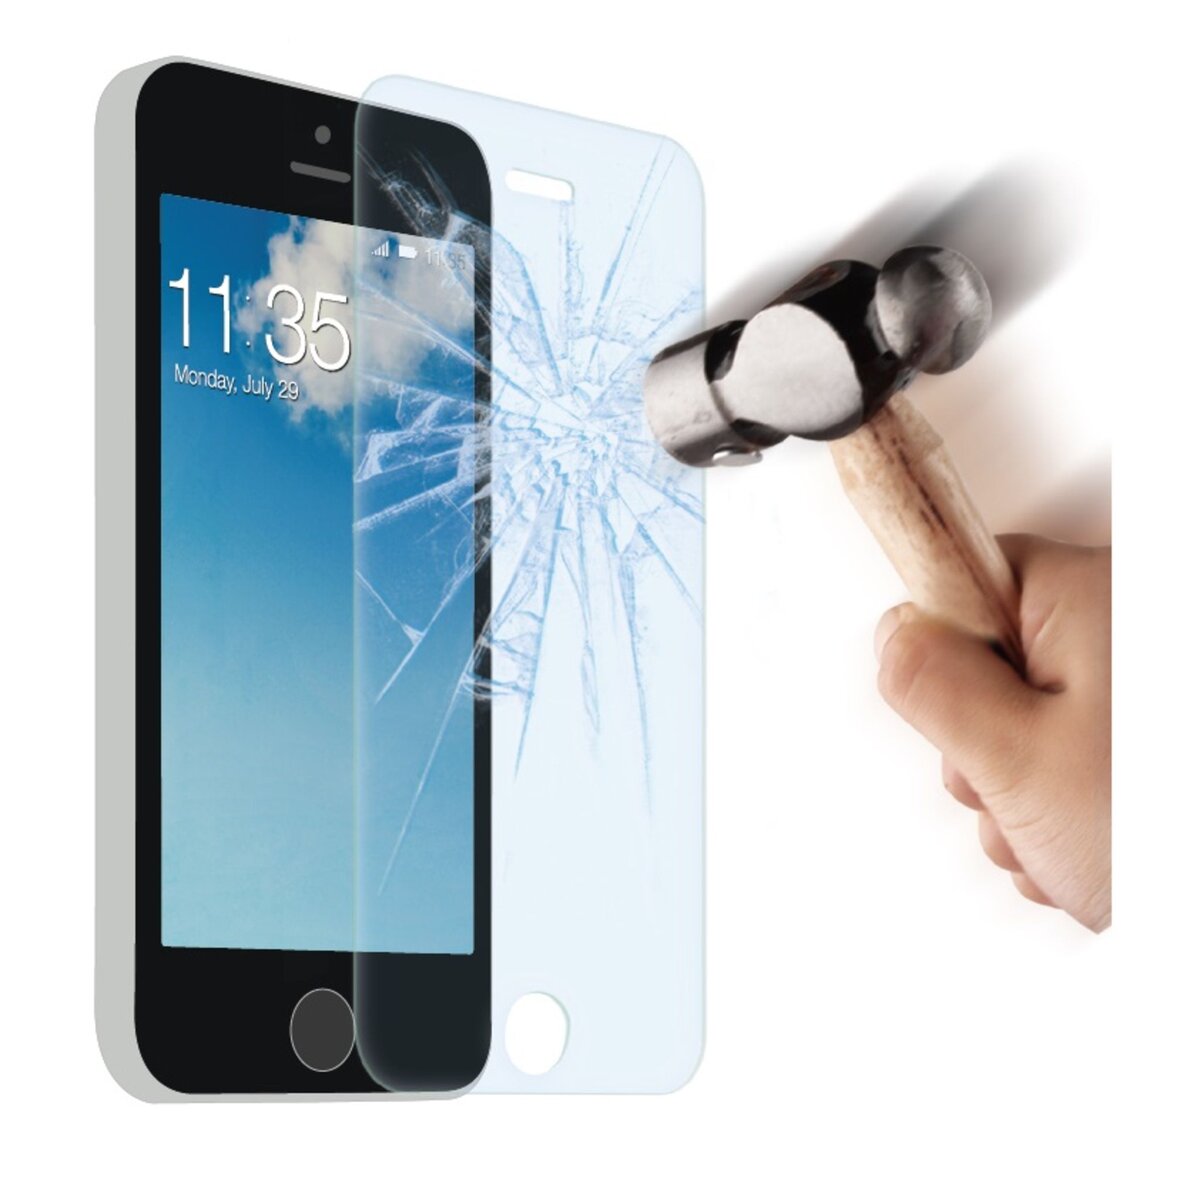 QILIVE Protection Écran Verre Trempé pour iPhone 6/6S - QILIVE